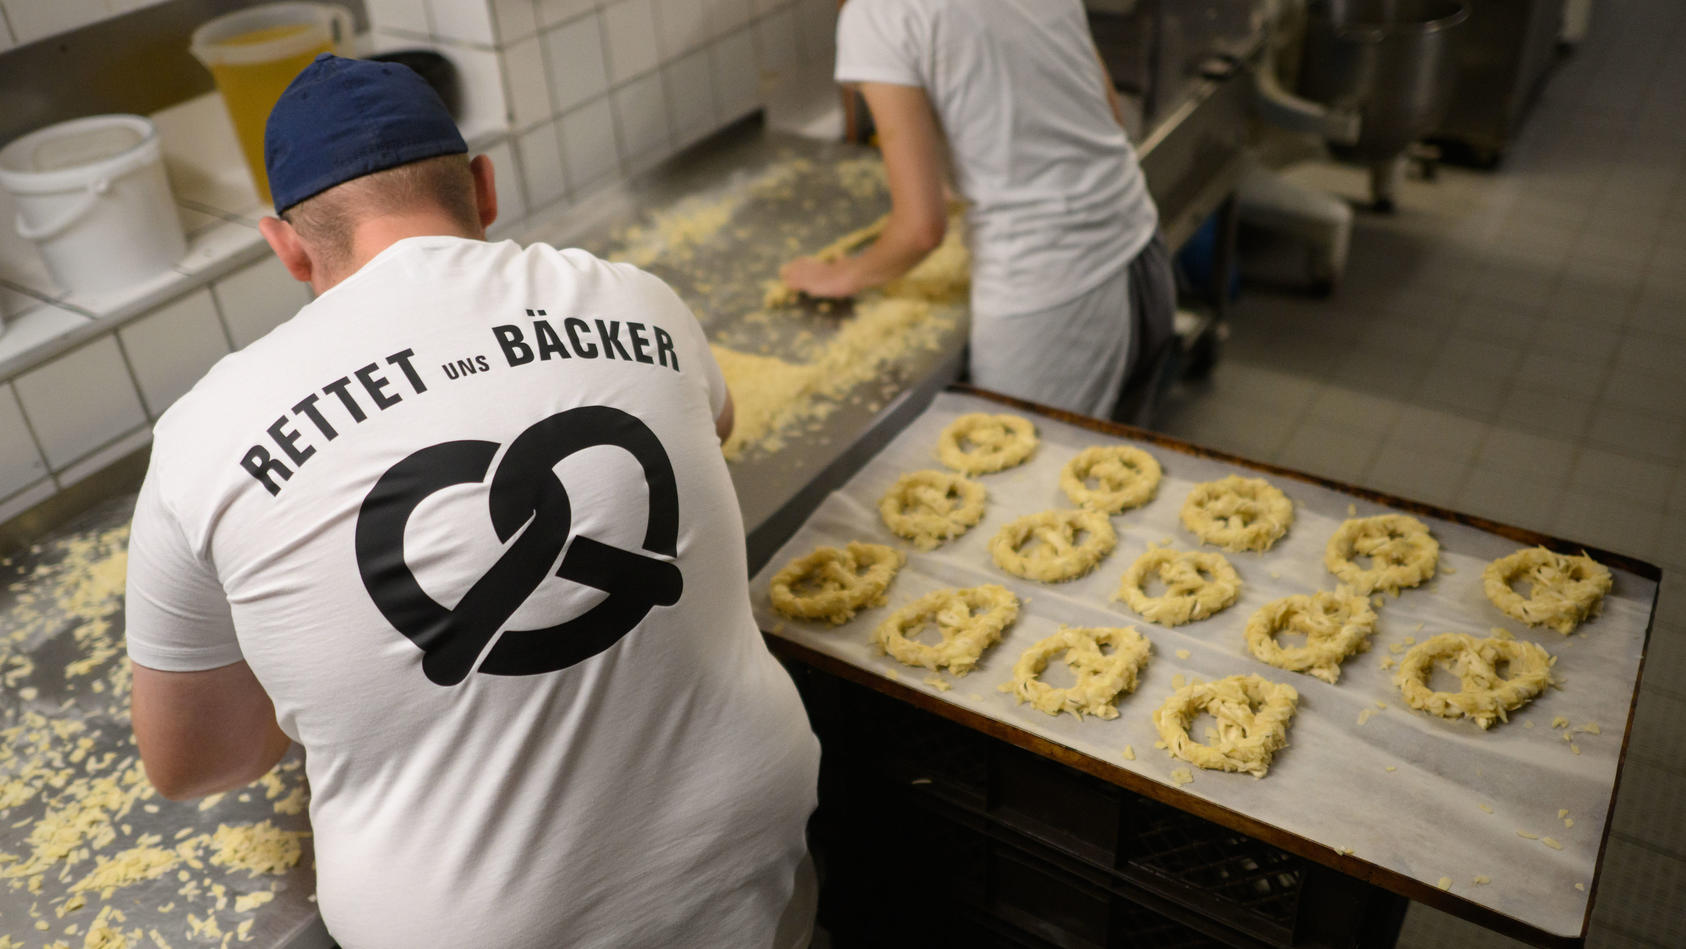 Ein Bäcker und eine Auszubildende stehen am frühen Morgen mit einem T-Shirt ·Rettet uns Bäcker· in der Backstube